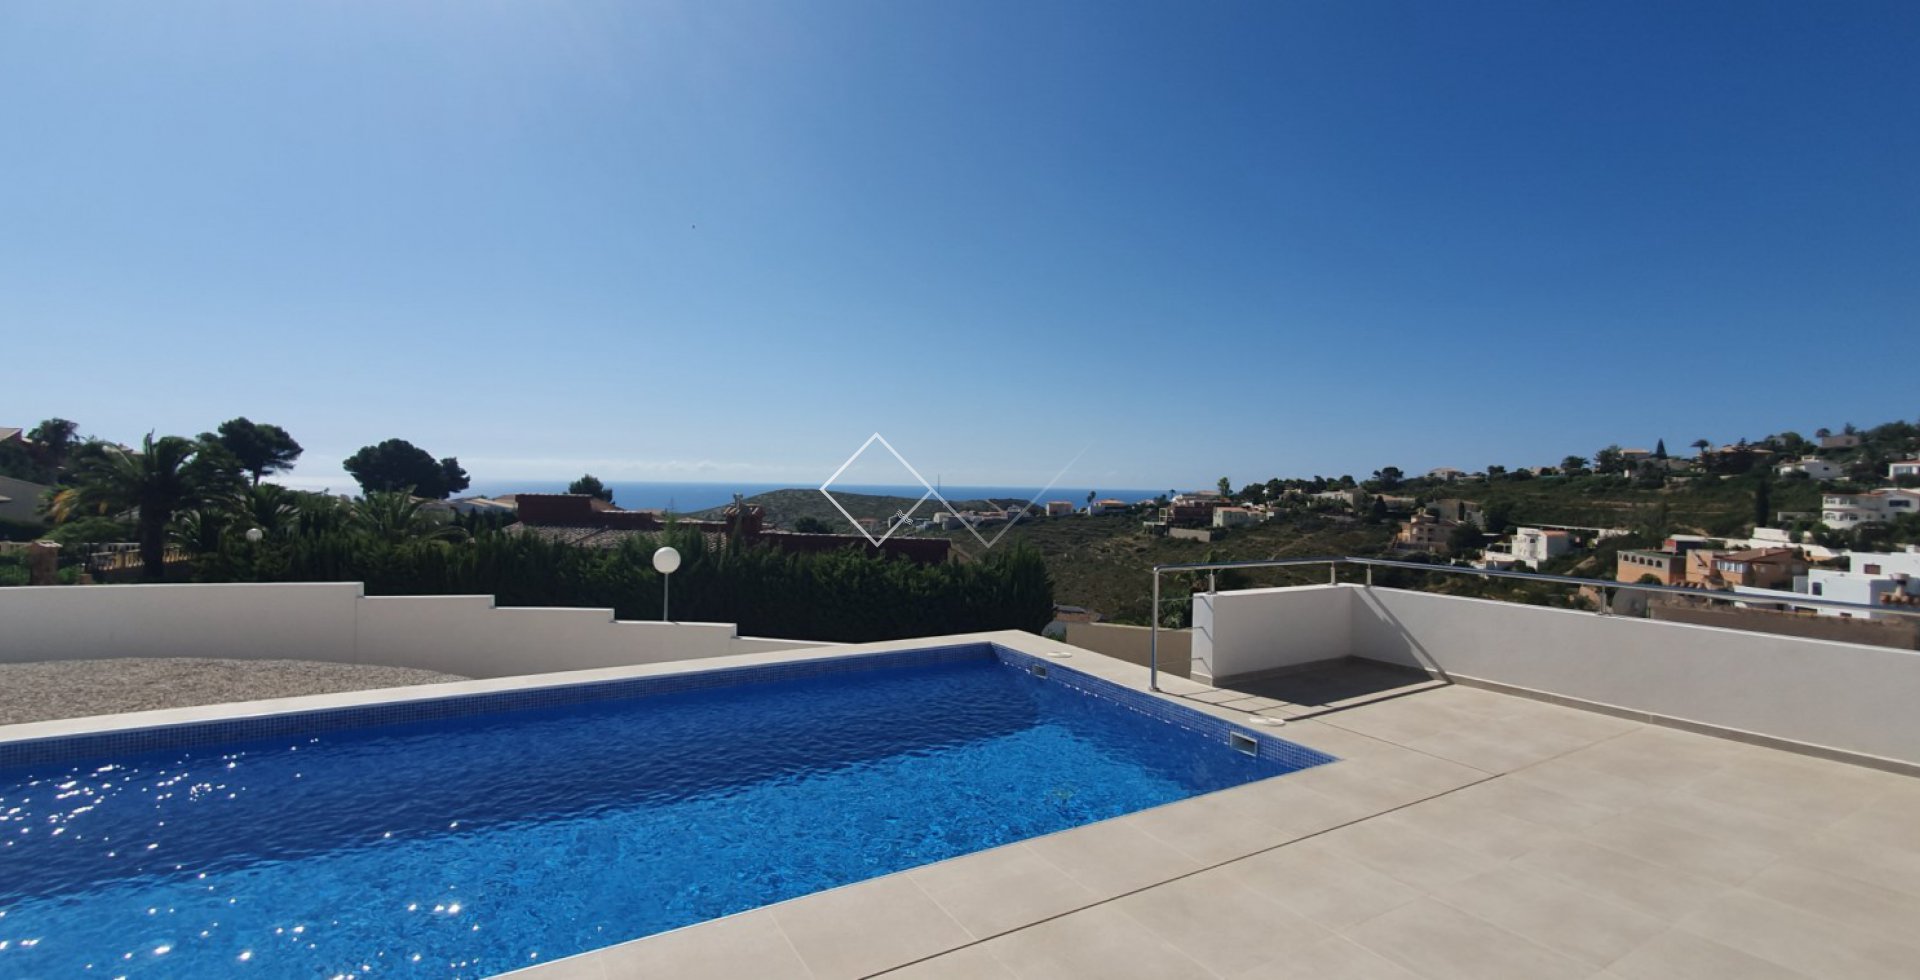 Vistas al mar - Moderna villa de lujo, situada cerca de la playa y con vistas al mar Mediterráneo.